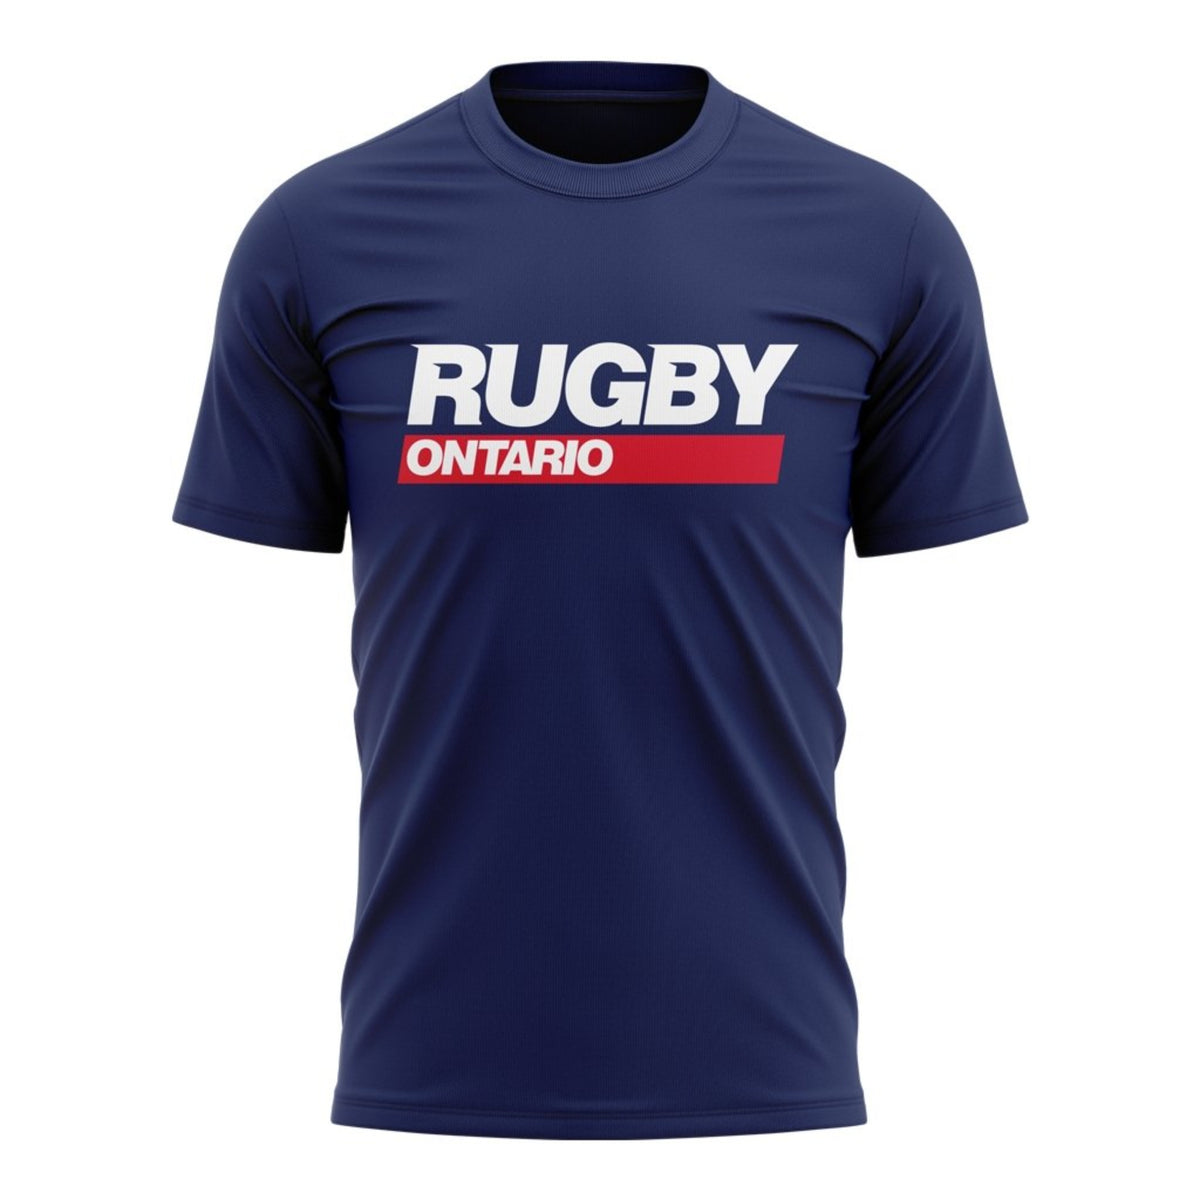 Rugby Ontario &quot;Statement&quot; Tee - Men&#39;s - www.therugbyshop.com www.therugbyshop.com MEN&#39;S / NAVY / XS XIX Brands TEES Rugby Ontario &quot;Statement&quot; Tee - Men&#39;s